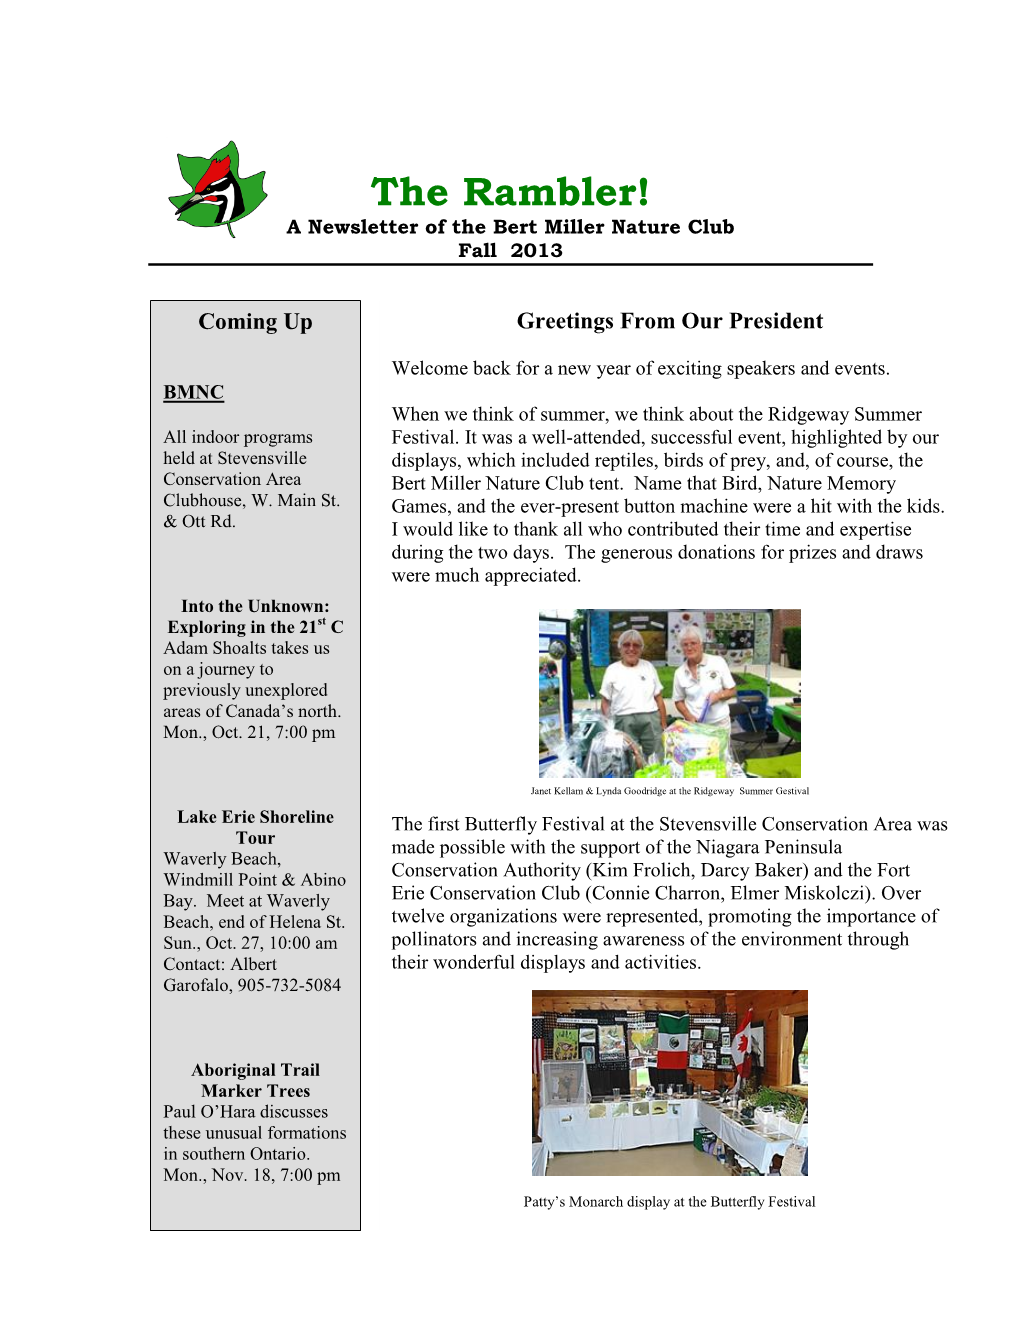 The Rambler! a Newsletter of the Bert Miller Nature Club Fall 2013